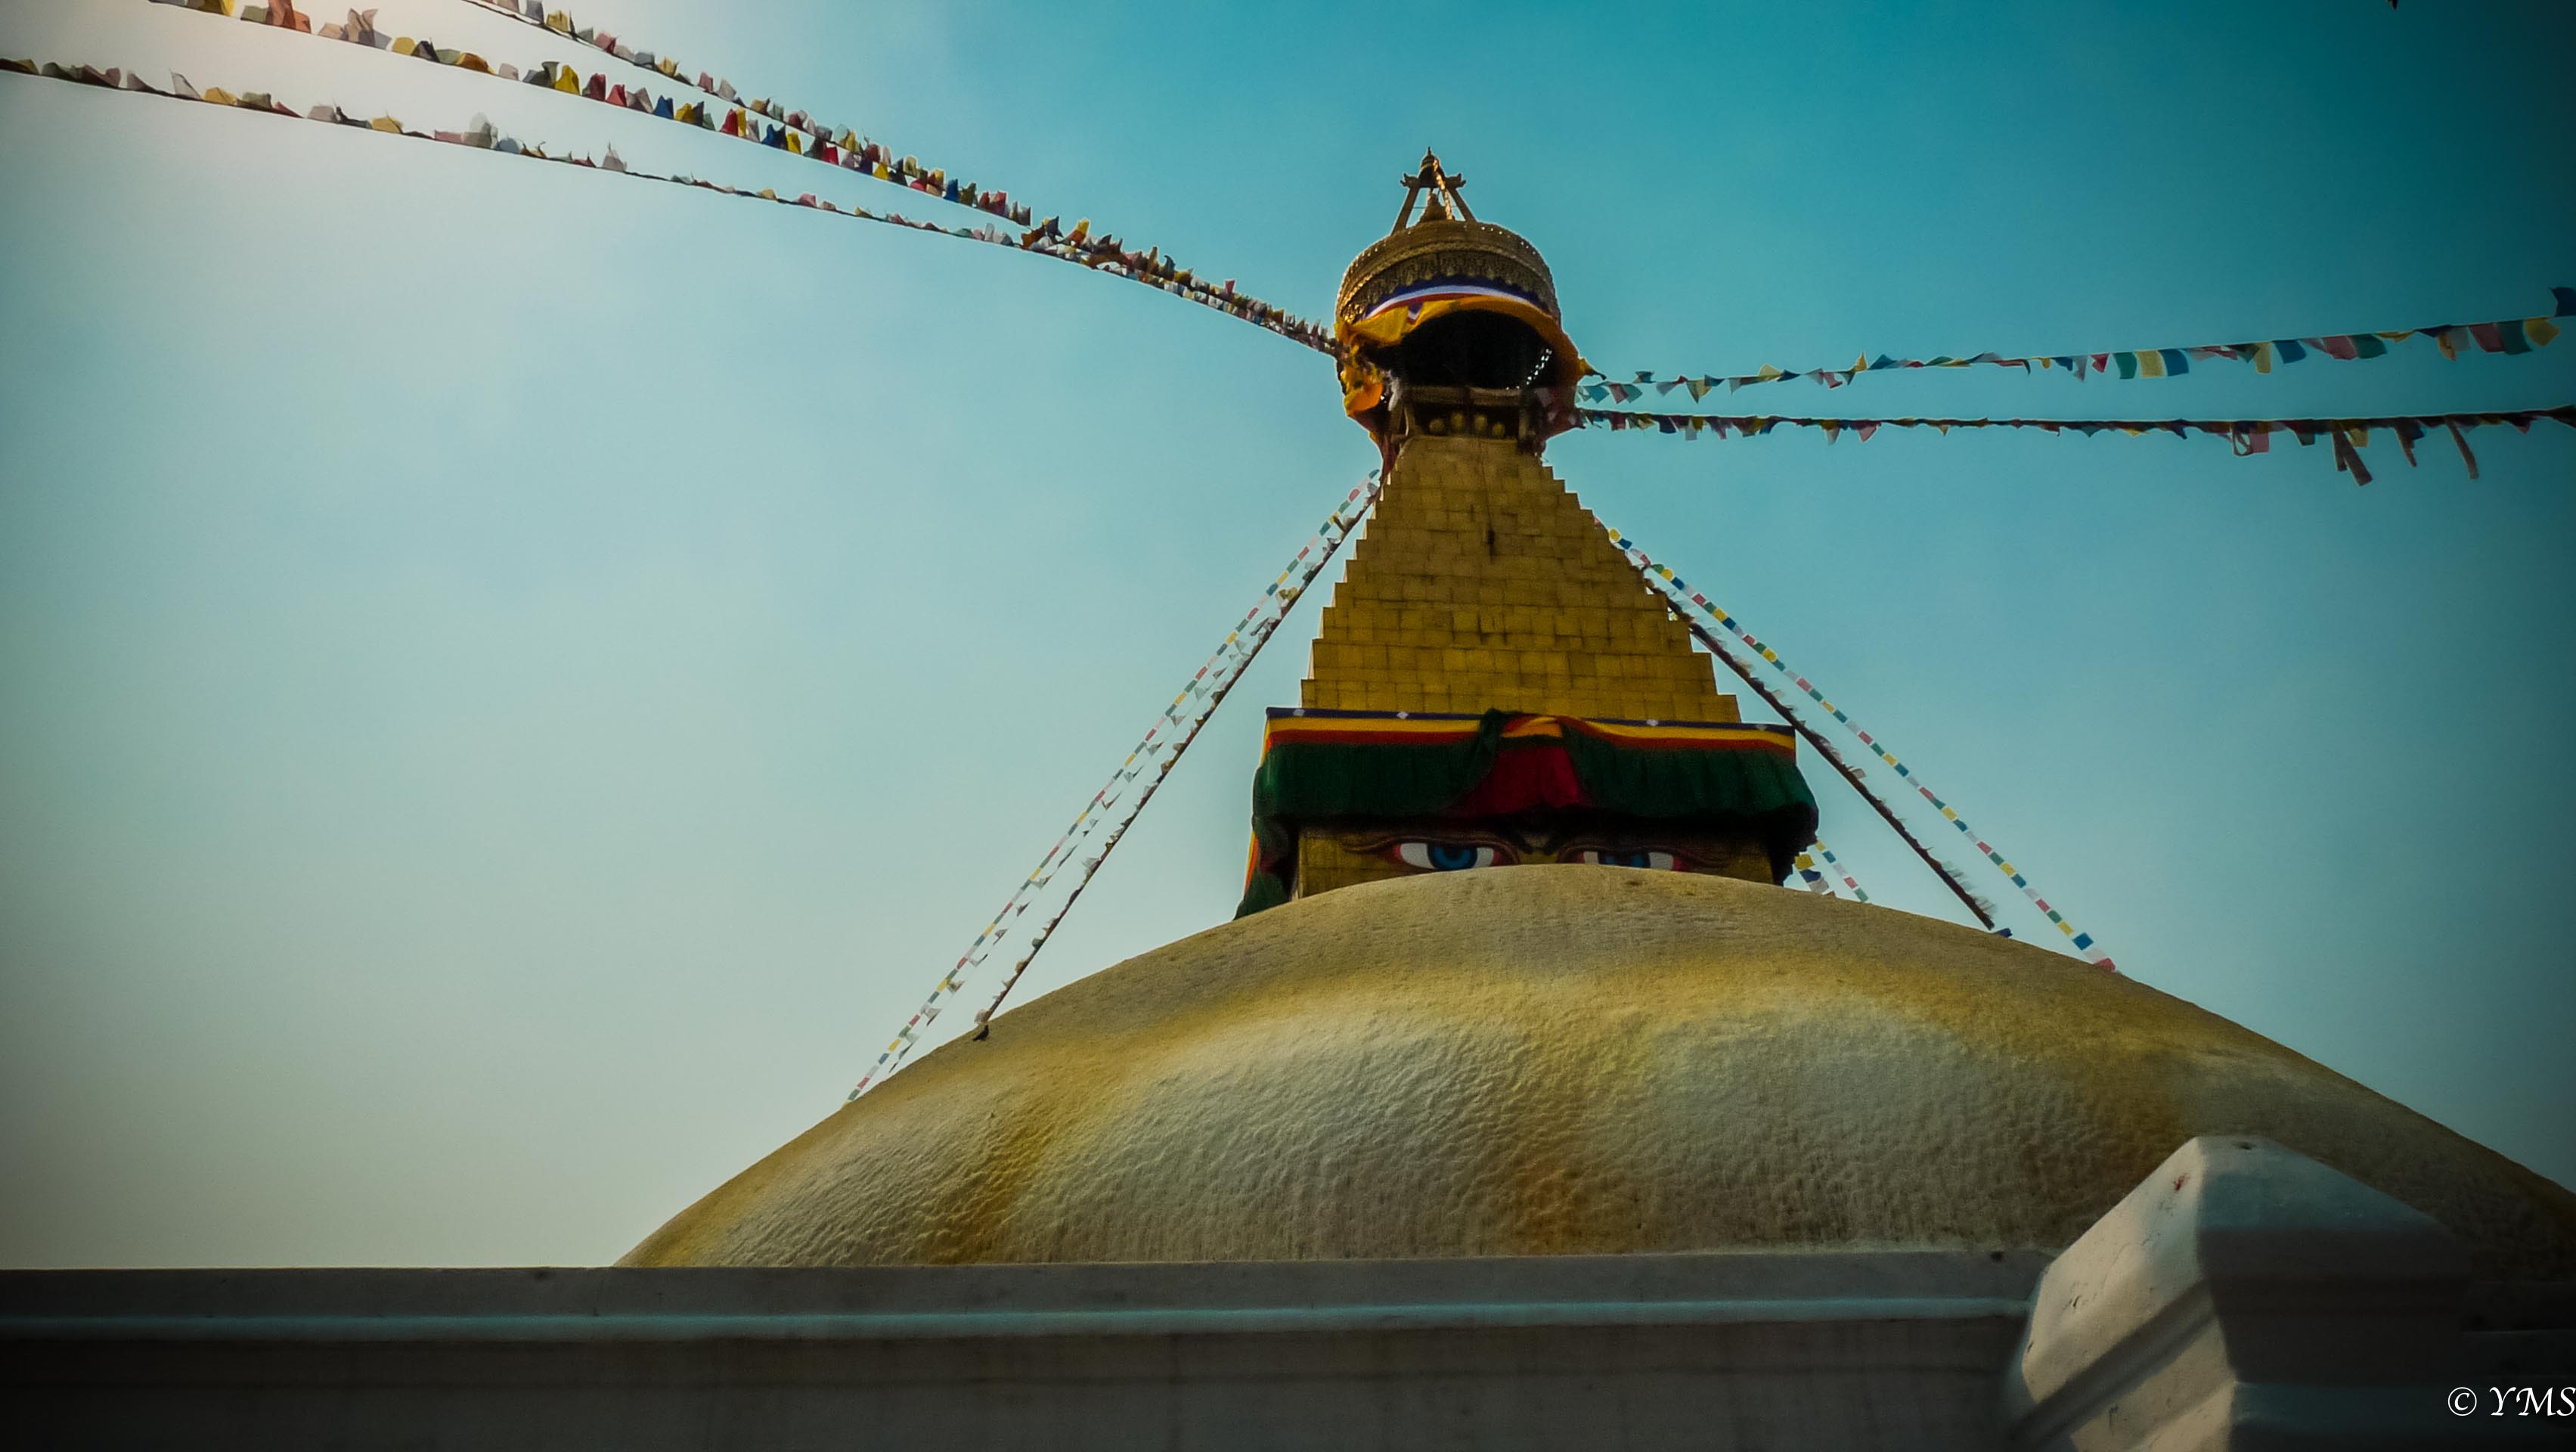 Nepal - Kathmandu - The Stupa At Bodhnath